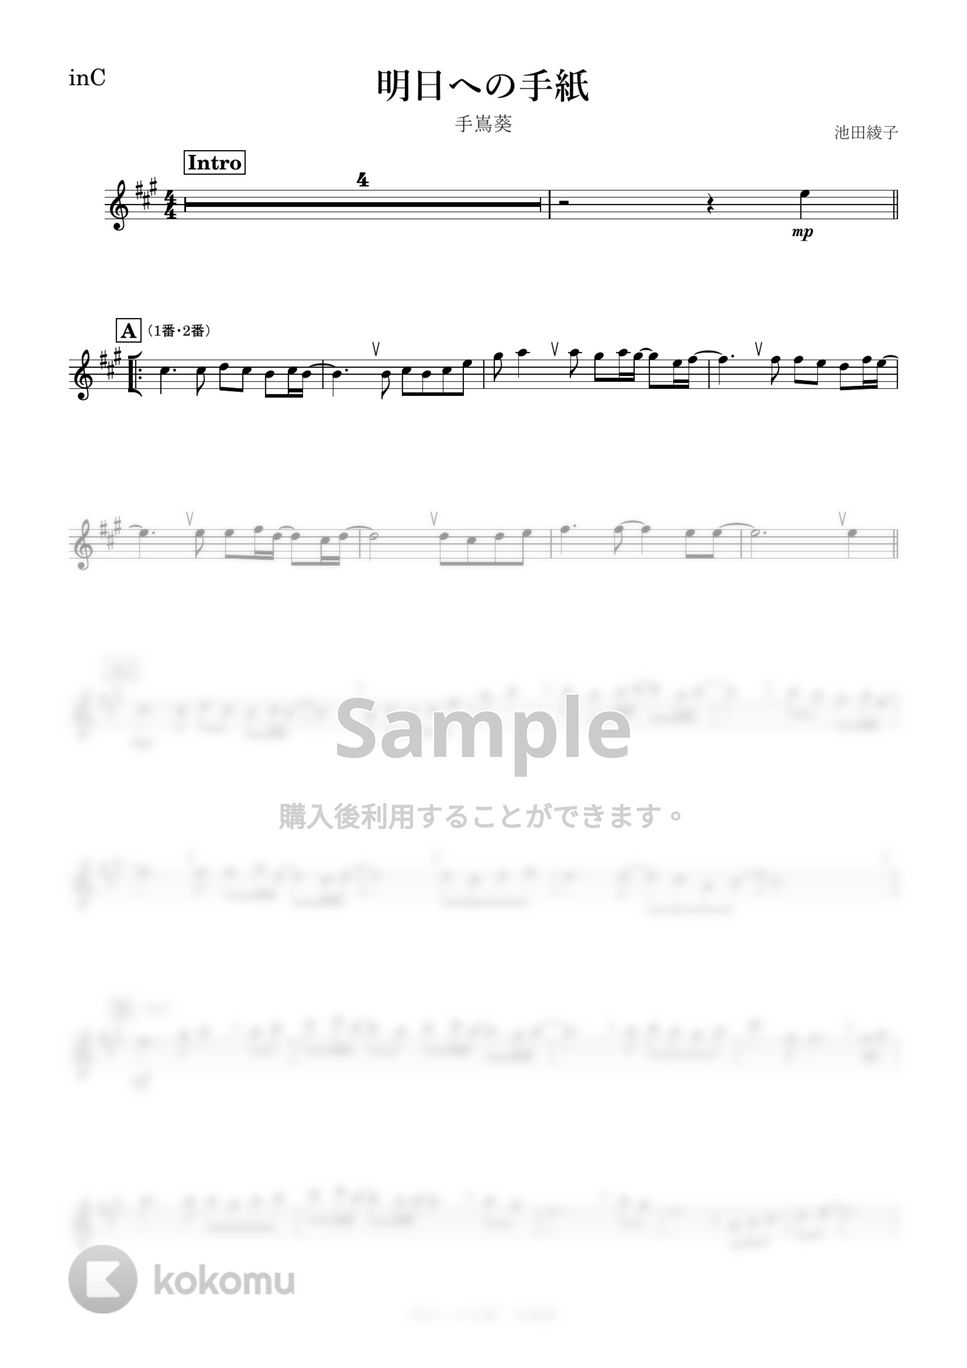 手嶌葵 - 明日への手紙 (C) by kanamusic